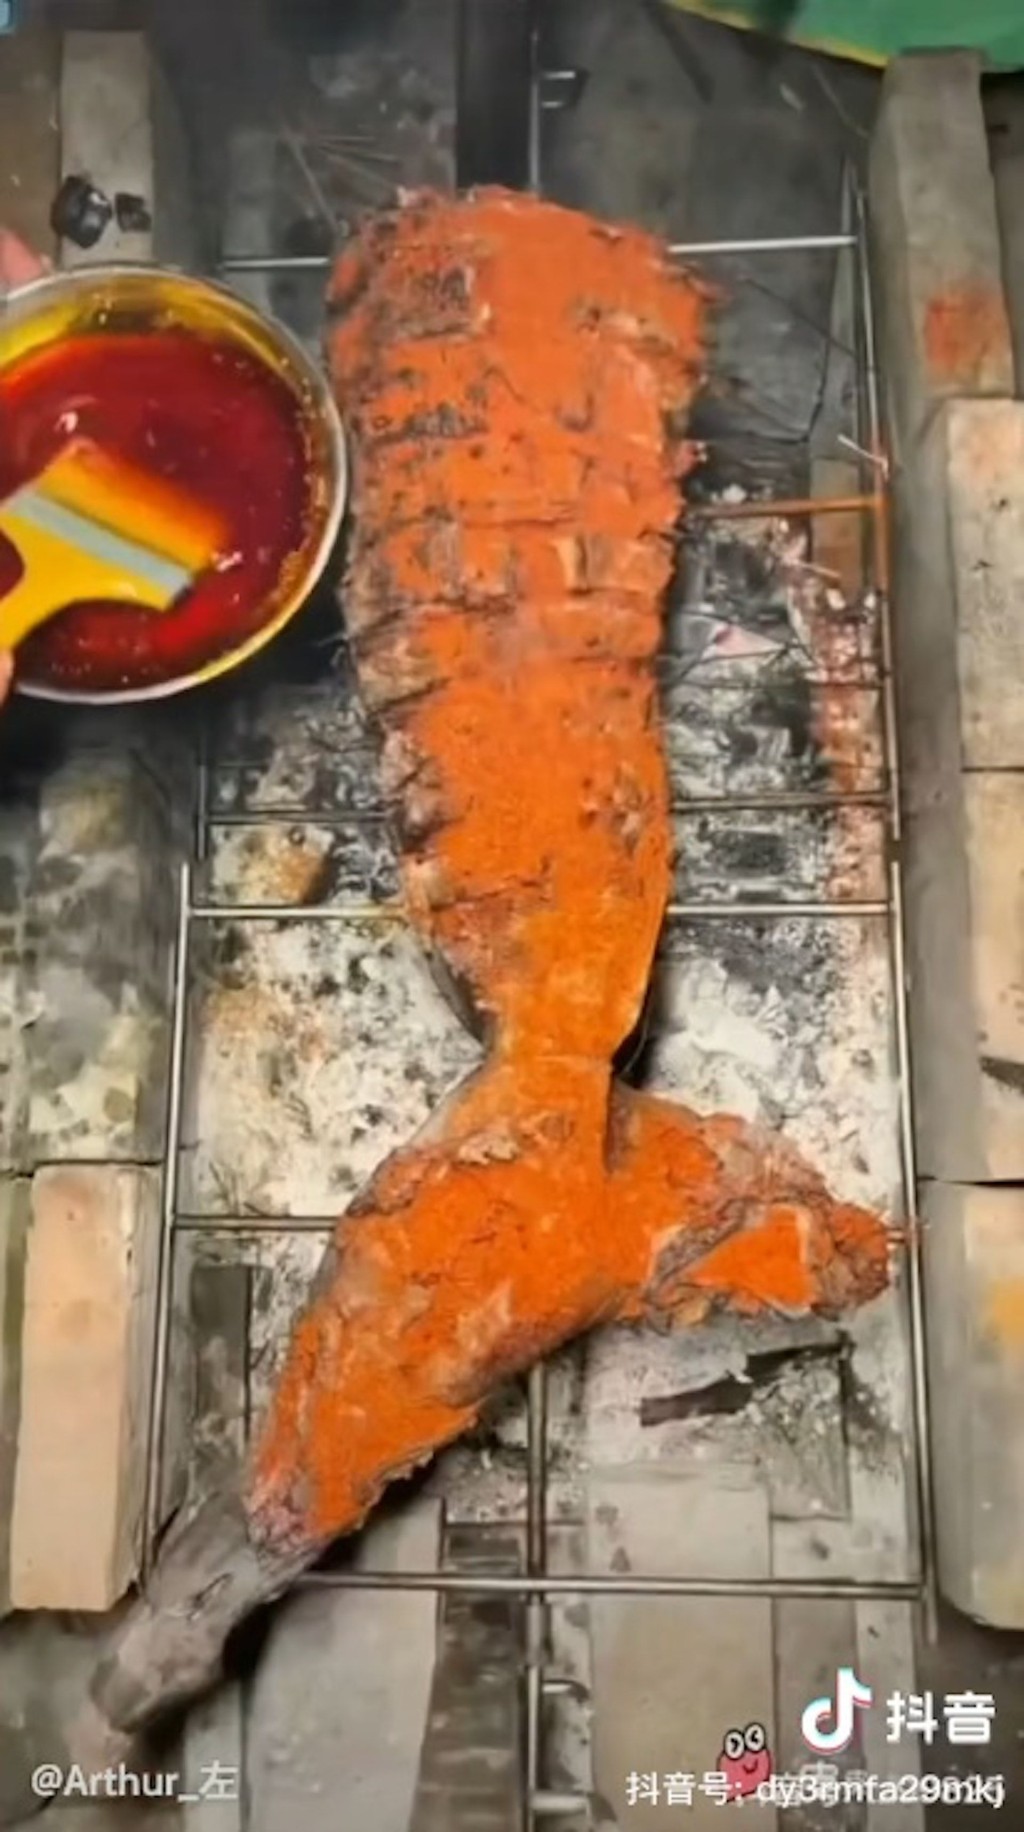 鲨鱼尾部用来烧烤，鱼体上洒满了红色调料。